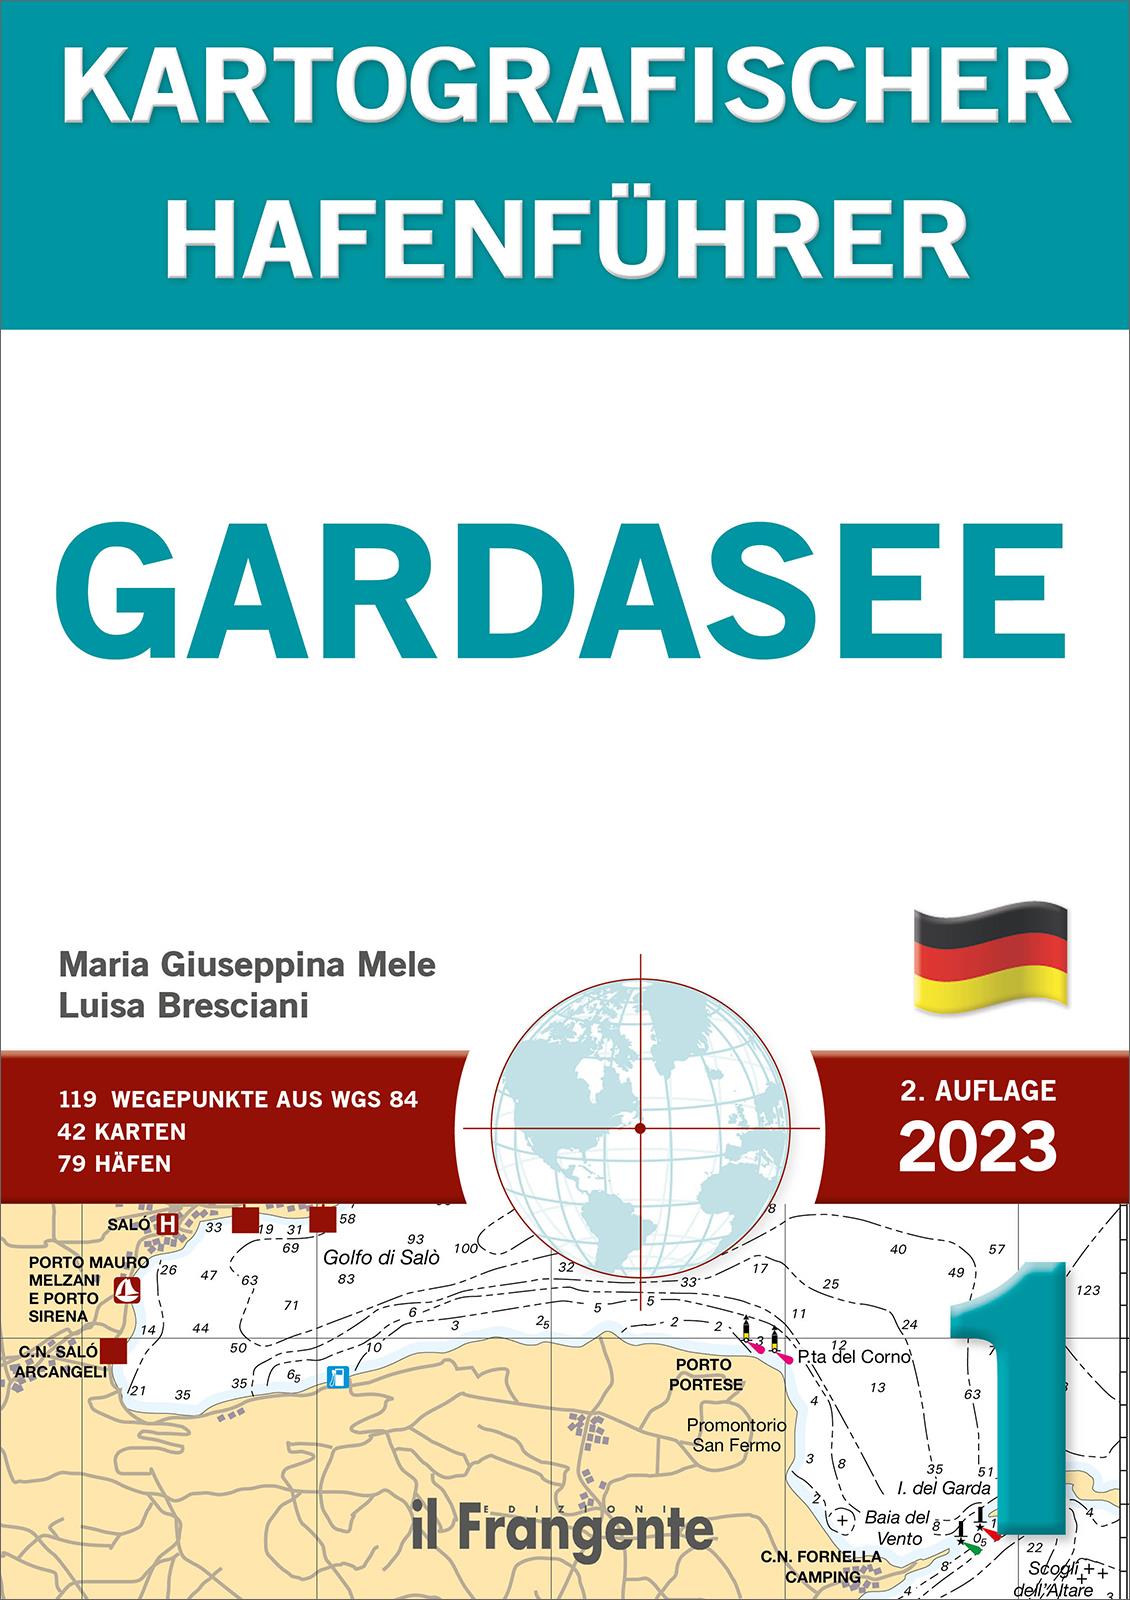 Kartografischer Hafenführer Gardasee